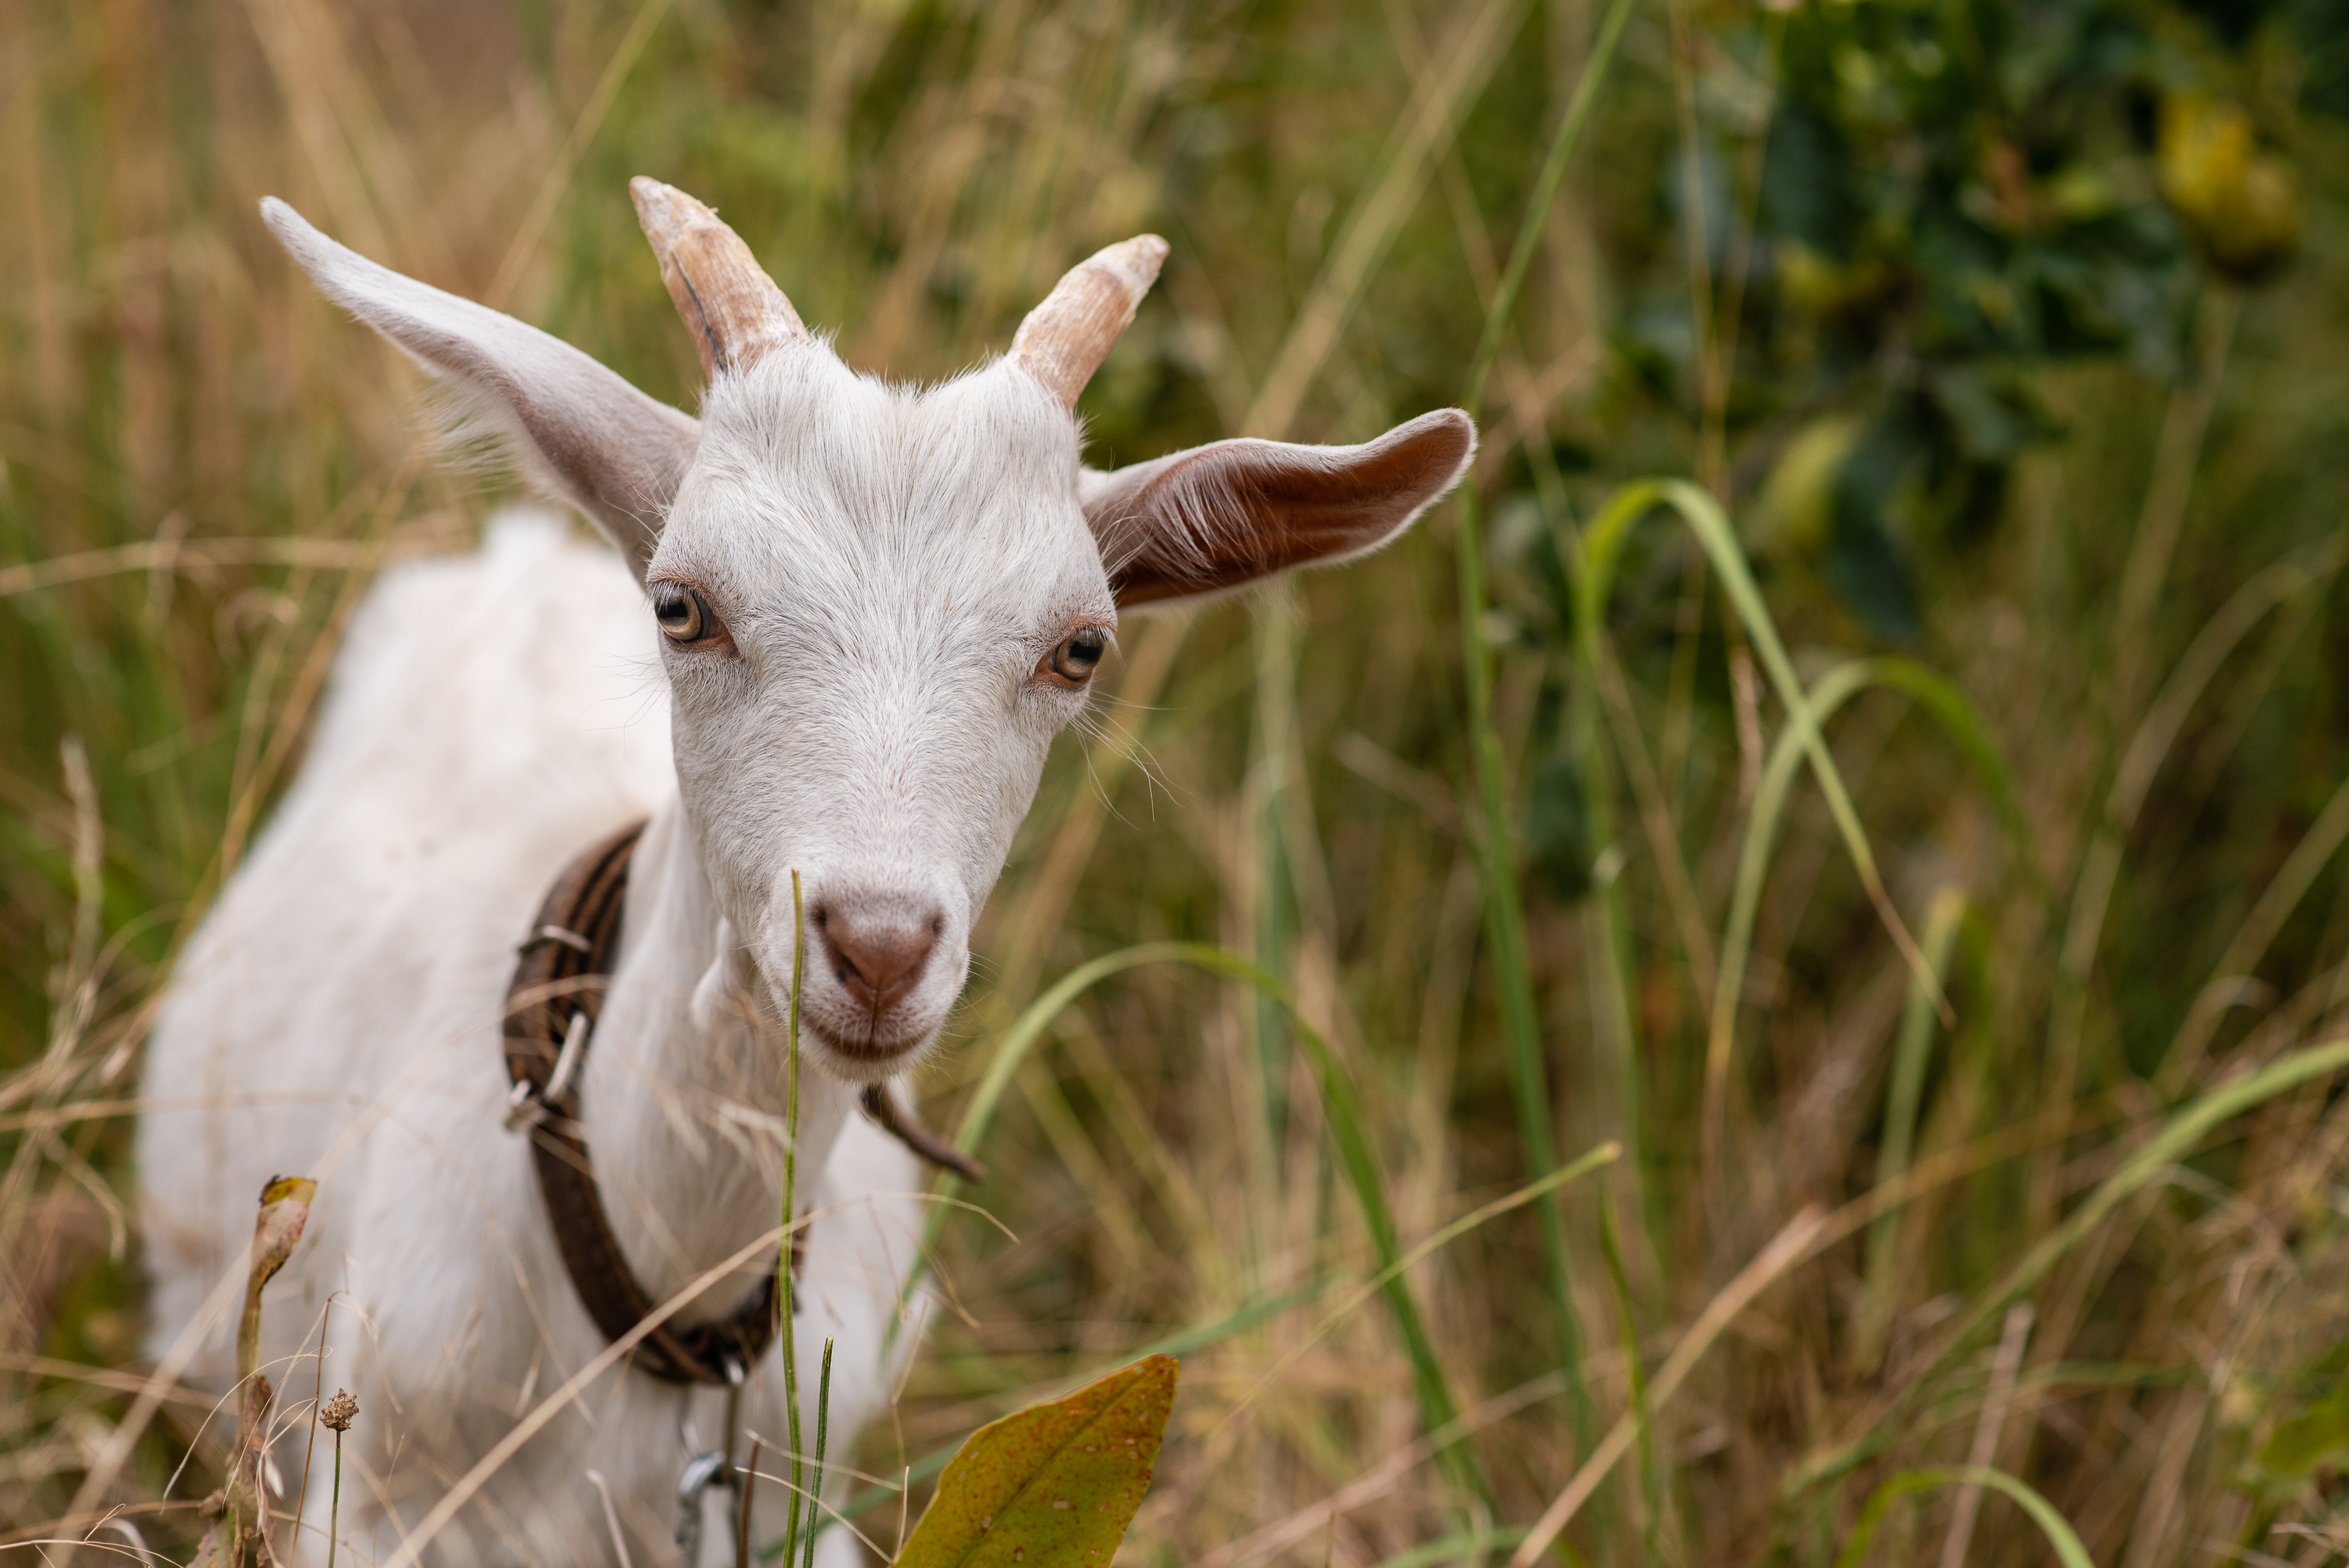 Closeup of a goat